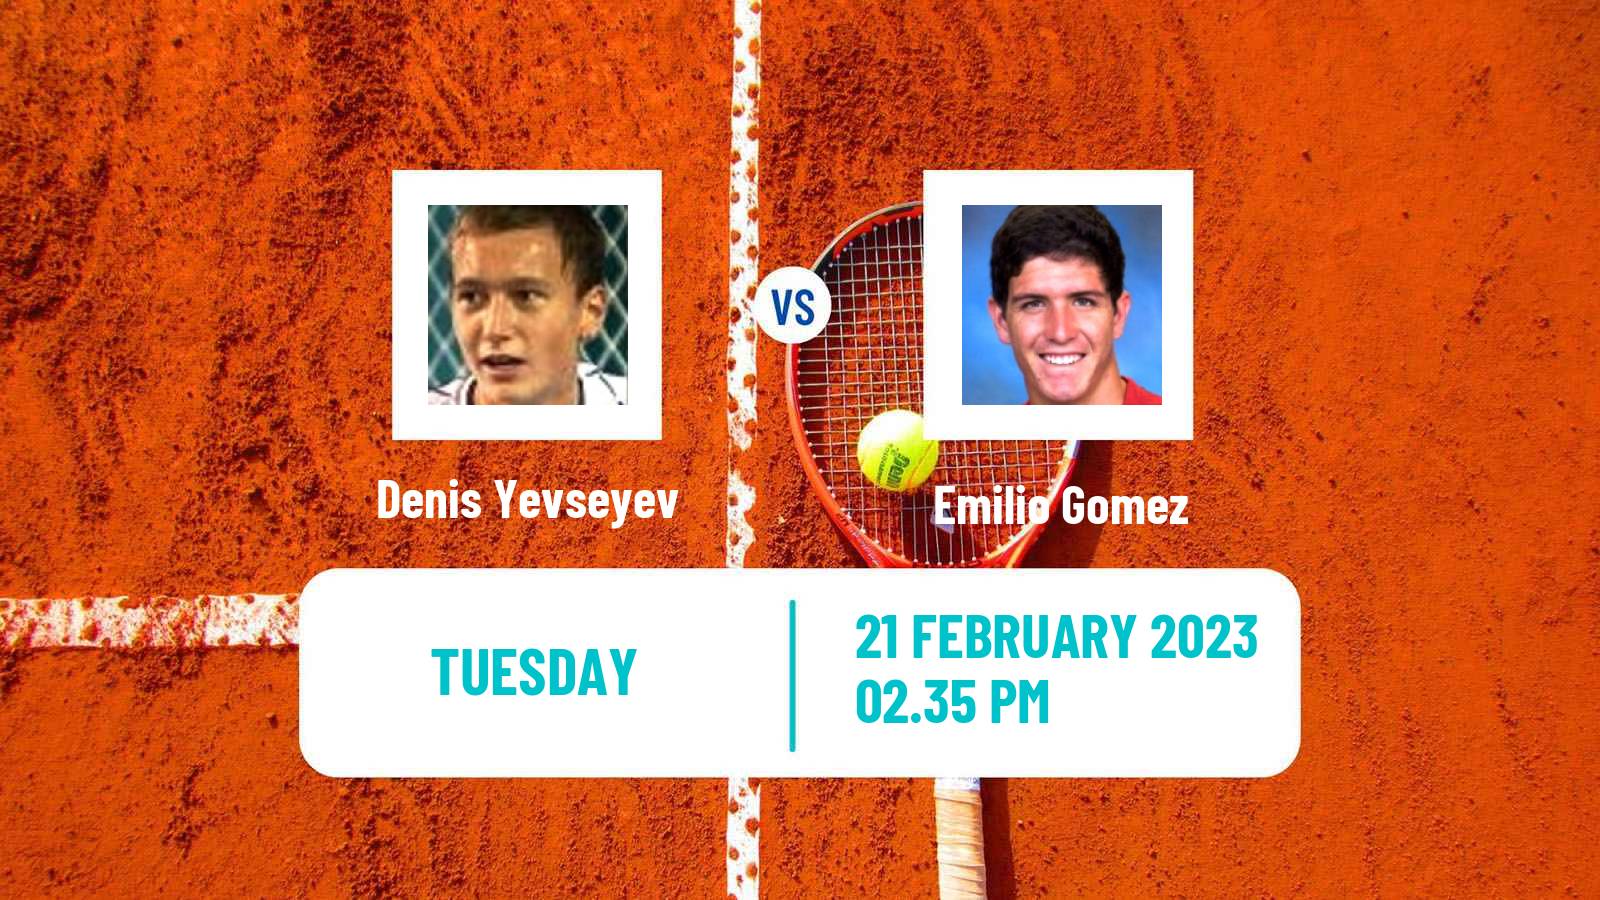 Tennis ATP Challenger Denis Yevseyev - Emilio Gomez